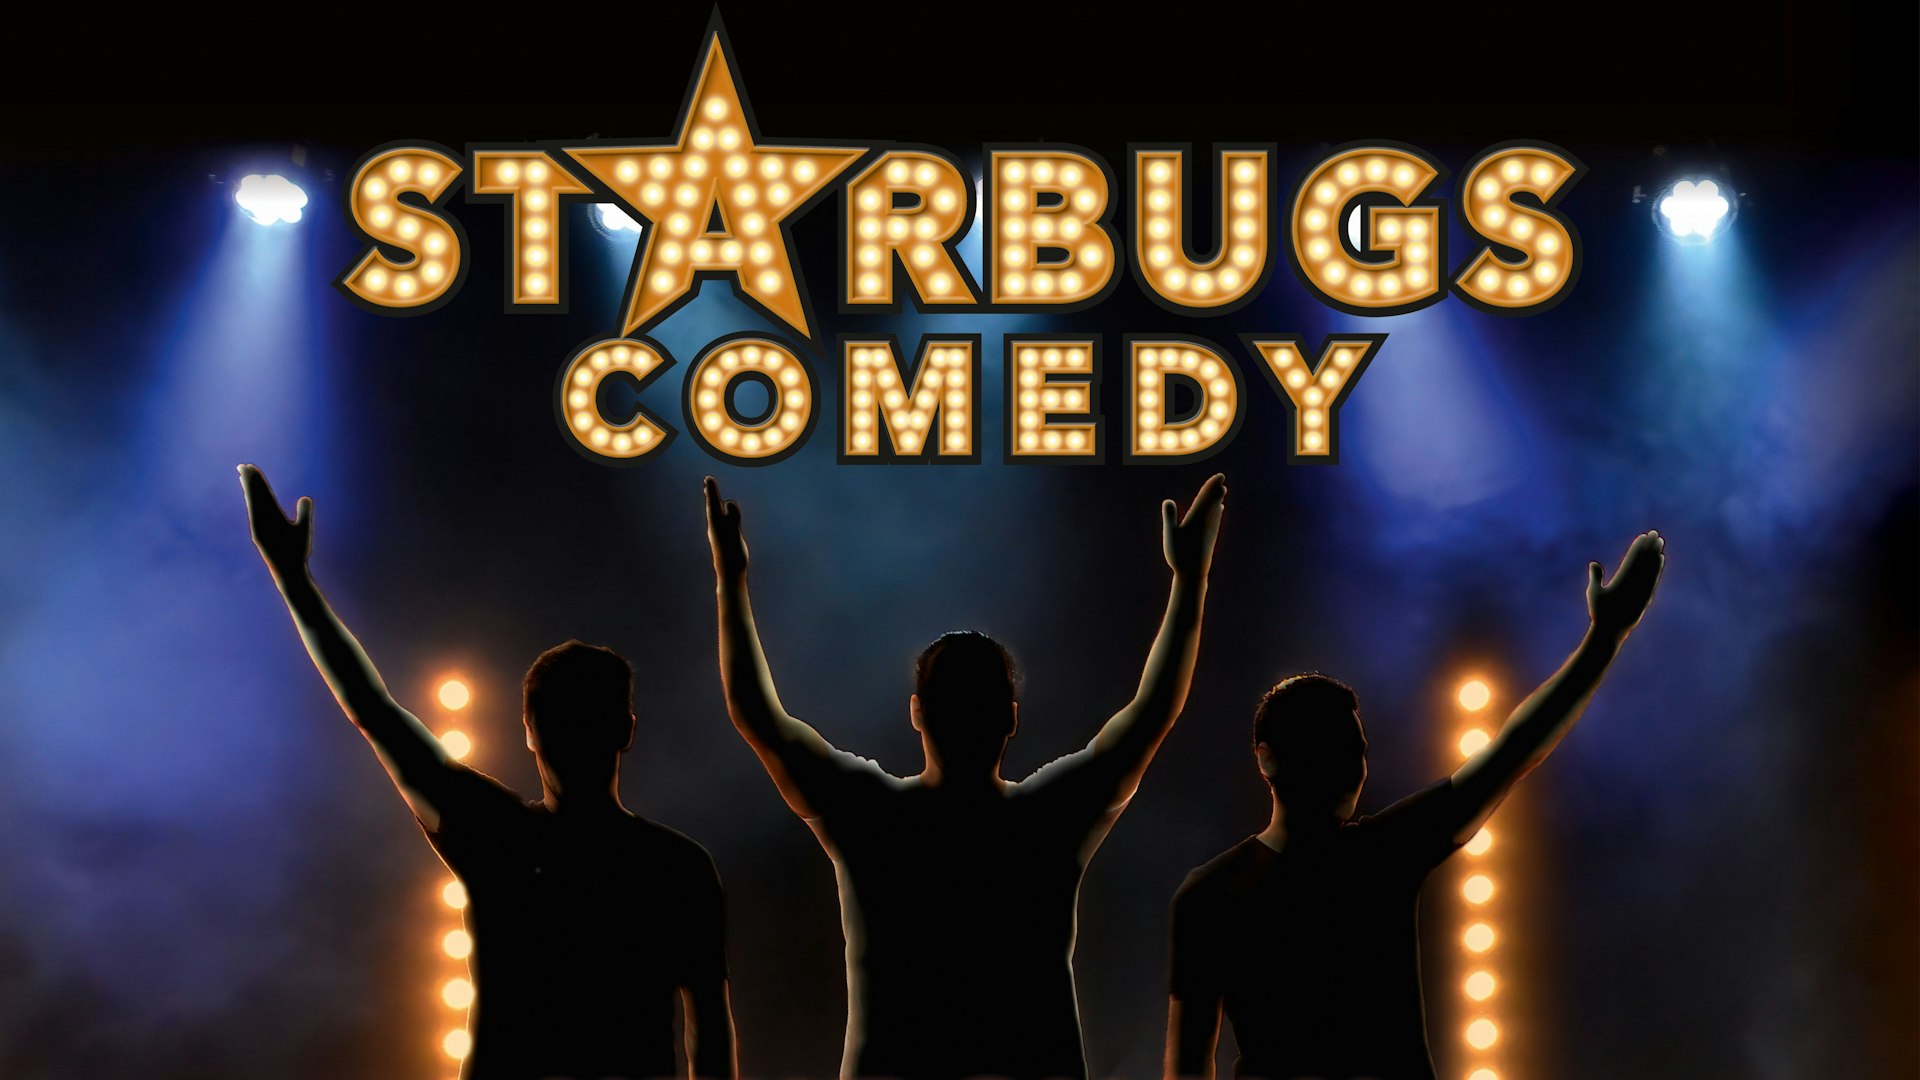 Vorankündigung Starbugs Neue Show quer A 01 HighRes.jpg